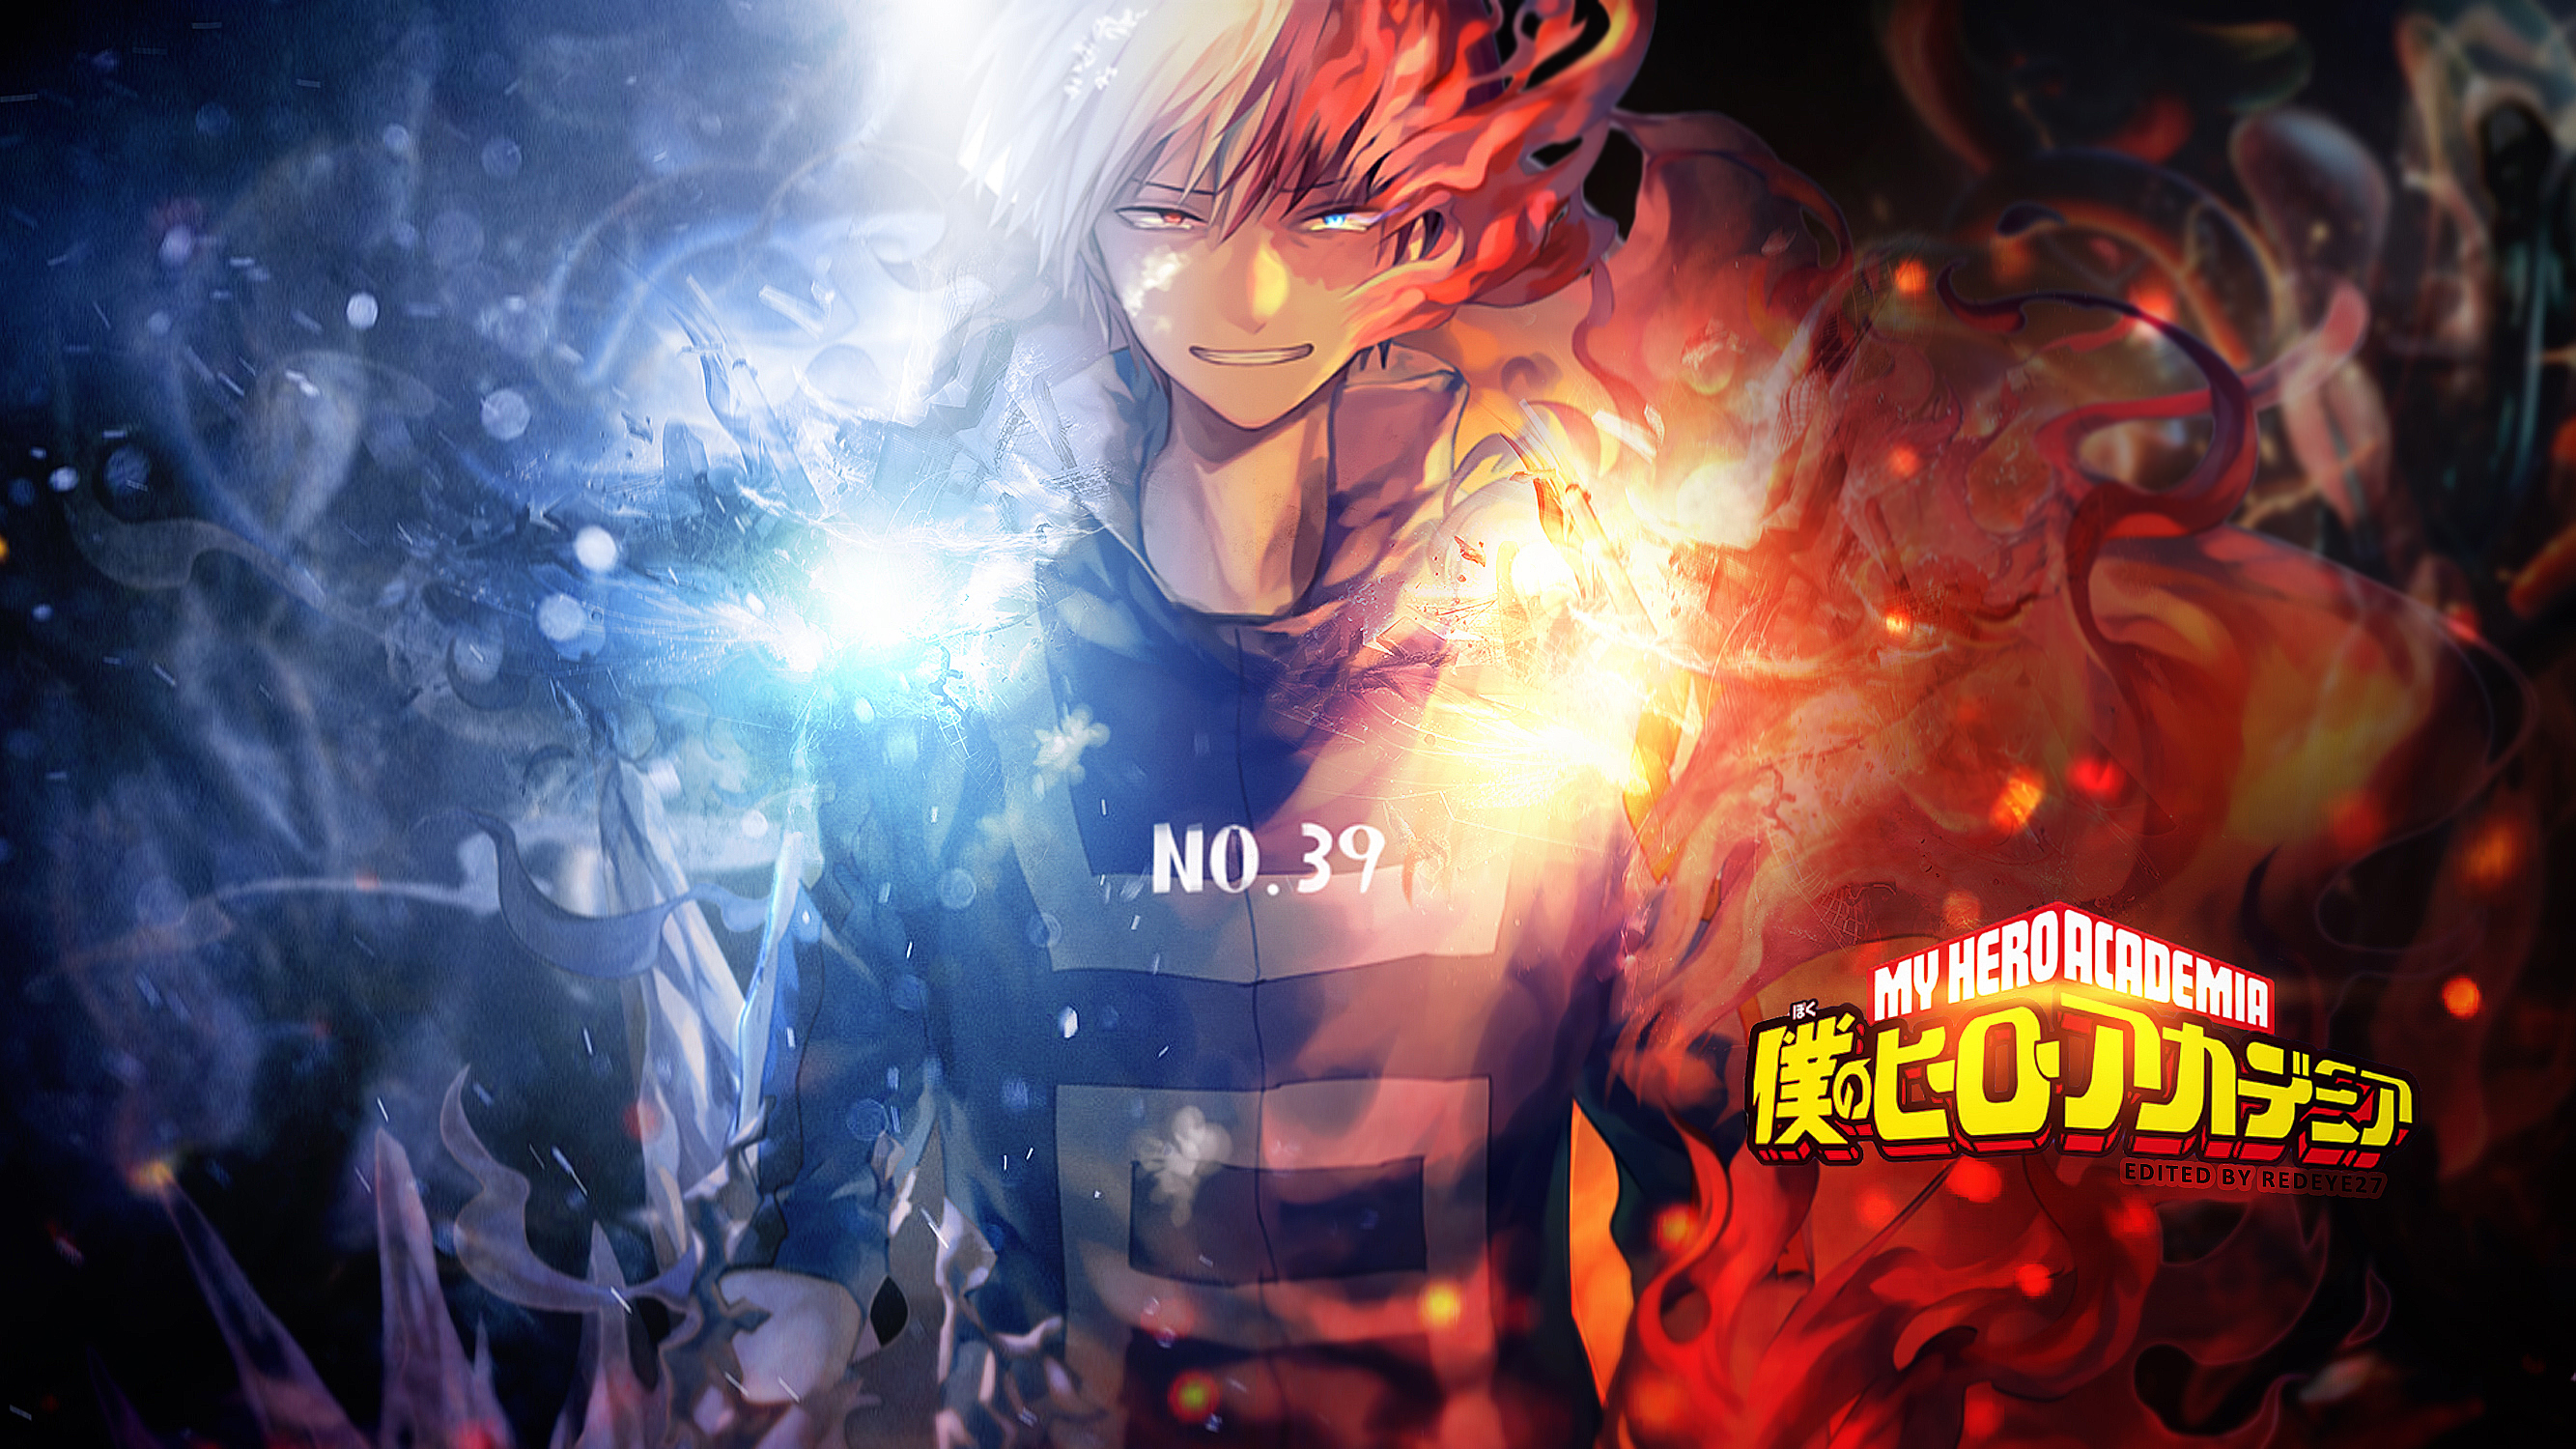 boku no hero academia wallpaper,anime,cg artwork,sky,graphics,fictional character